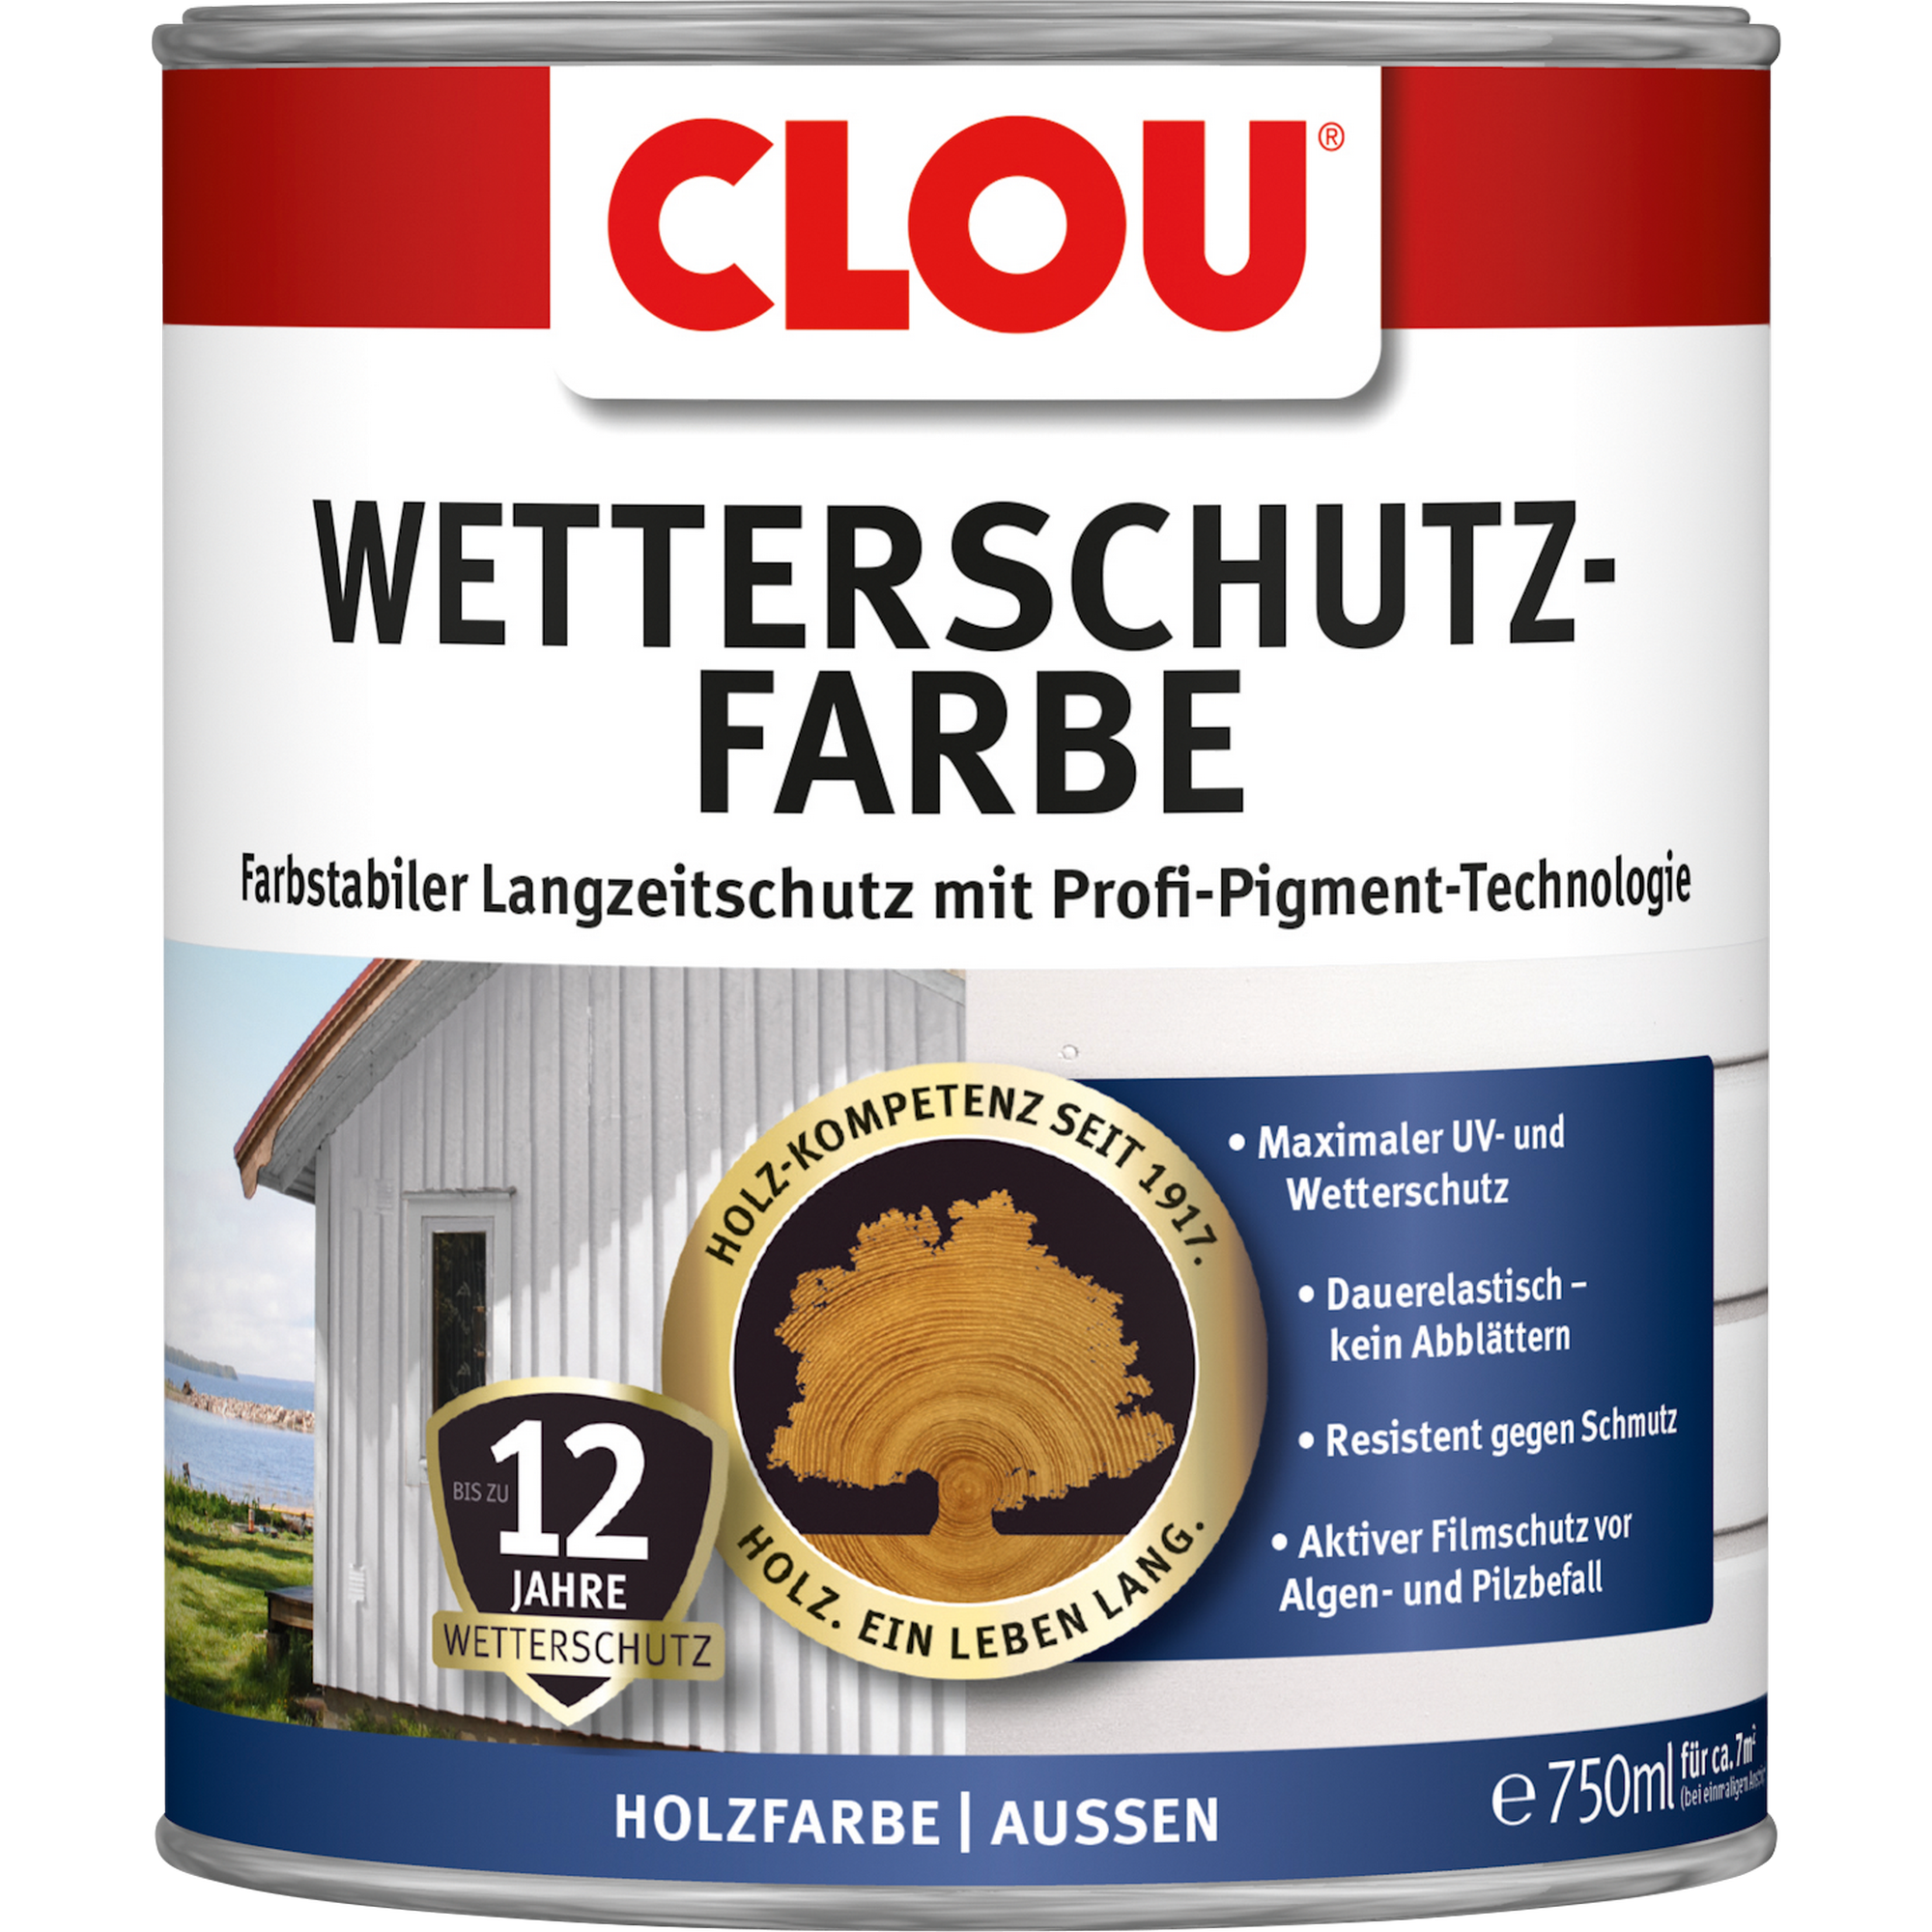 Wetterschutzfarbe schwedenrot 750 ml + product picture